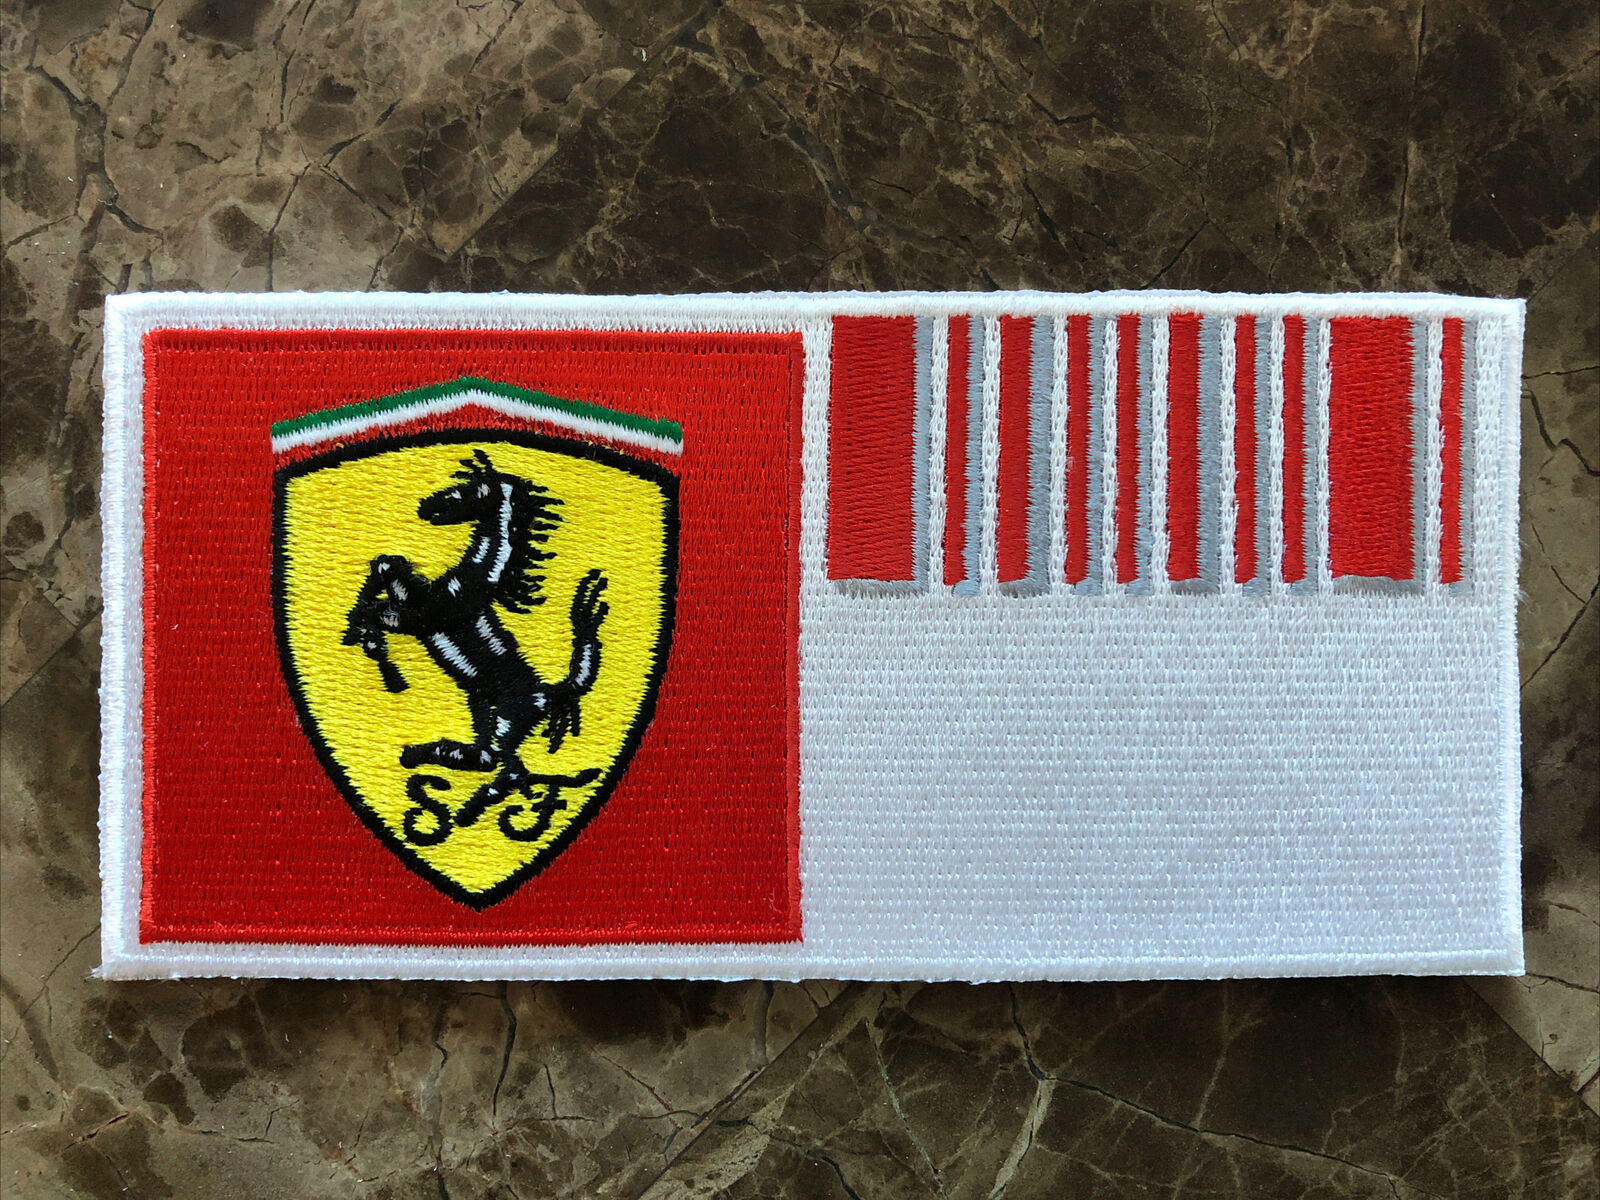 RARE Official Ferrari F1 Barcode Uniform Patch - Michael Schumacher & Raikkonen